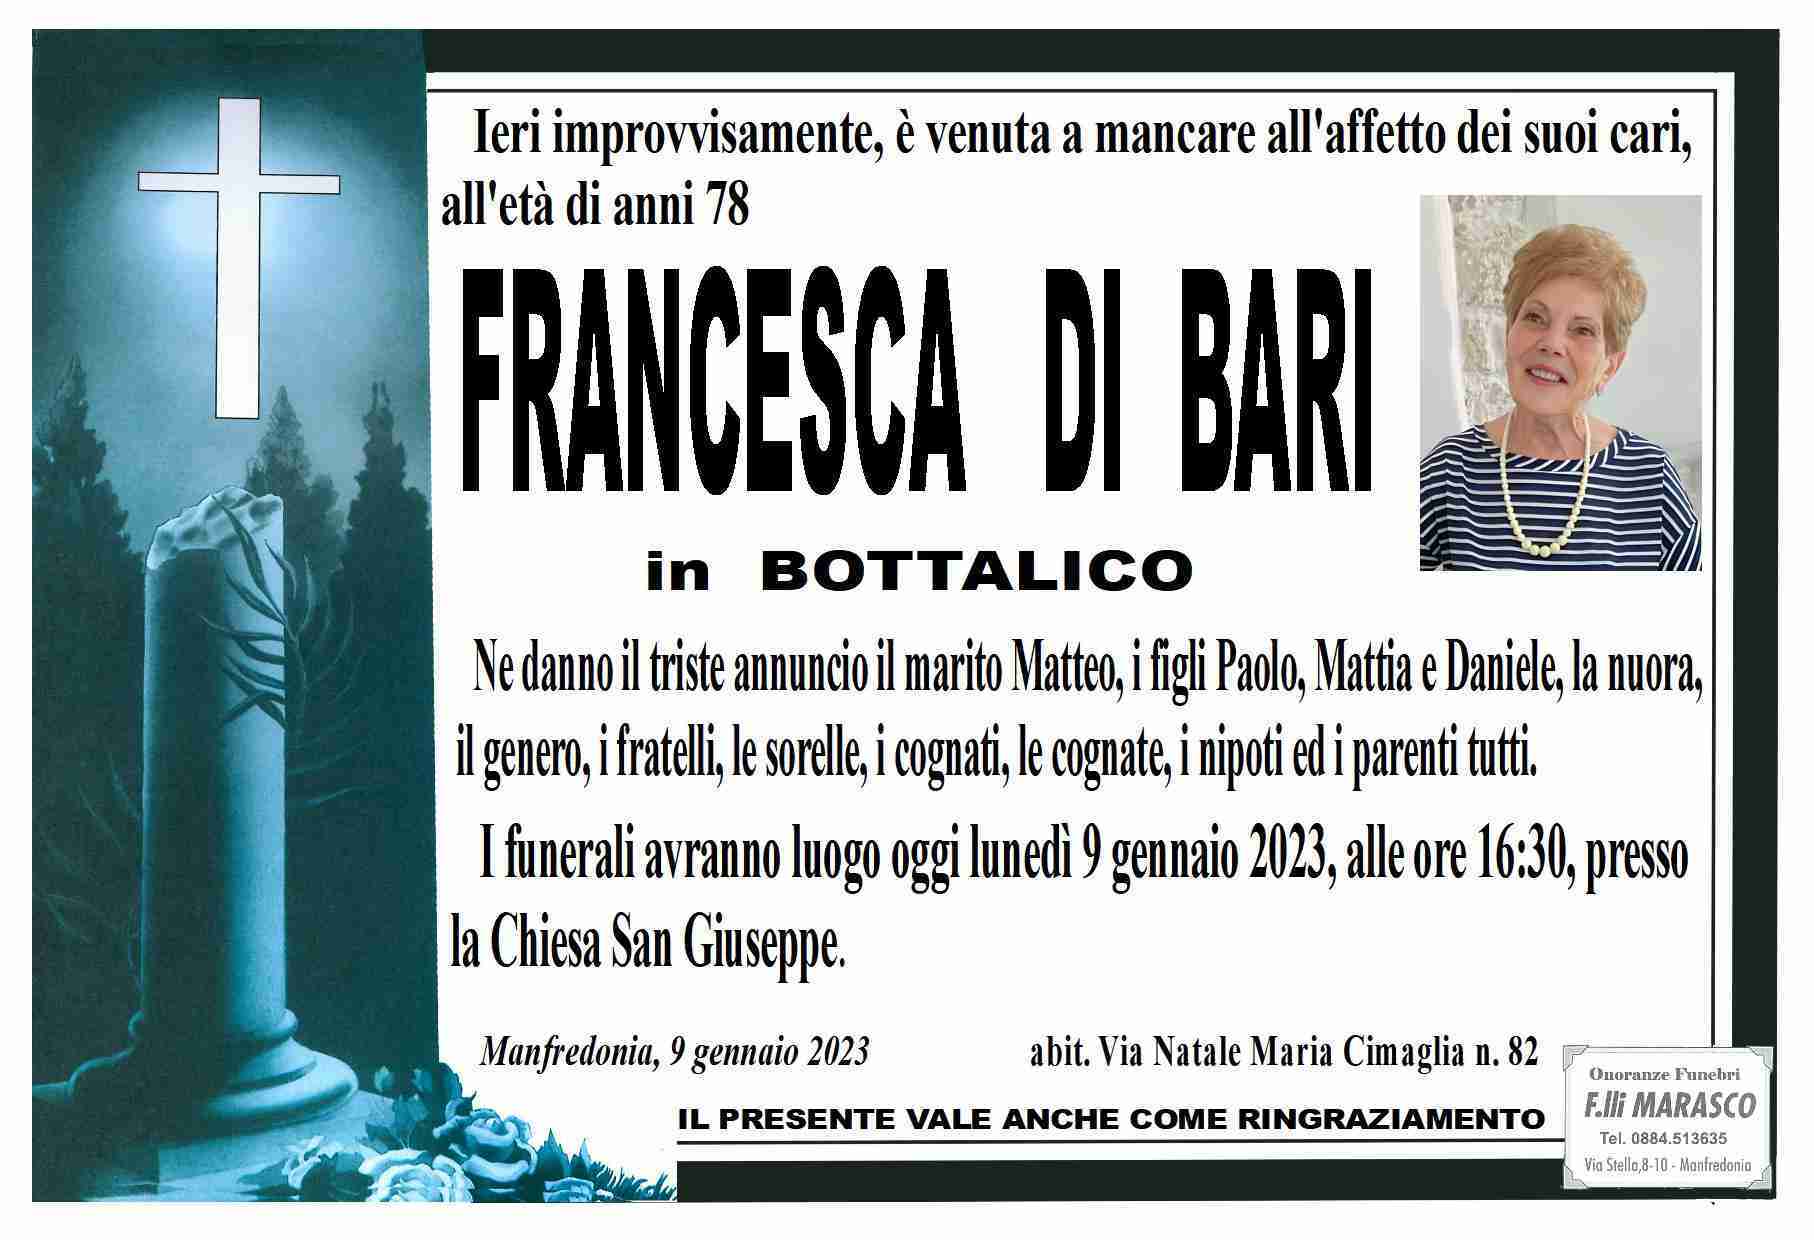 Francesca Di Bari